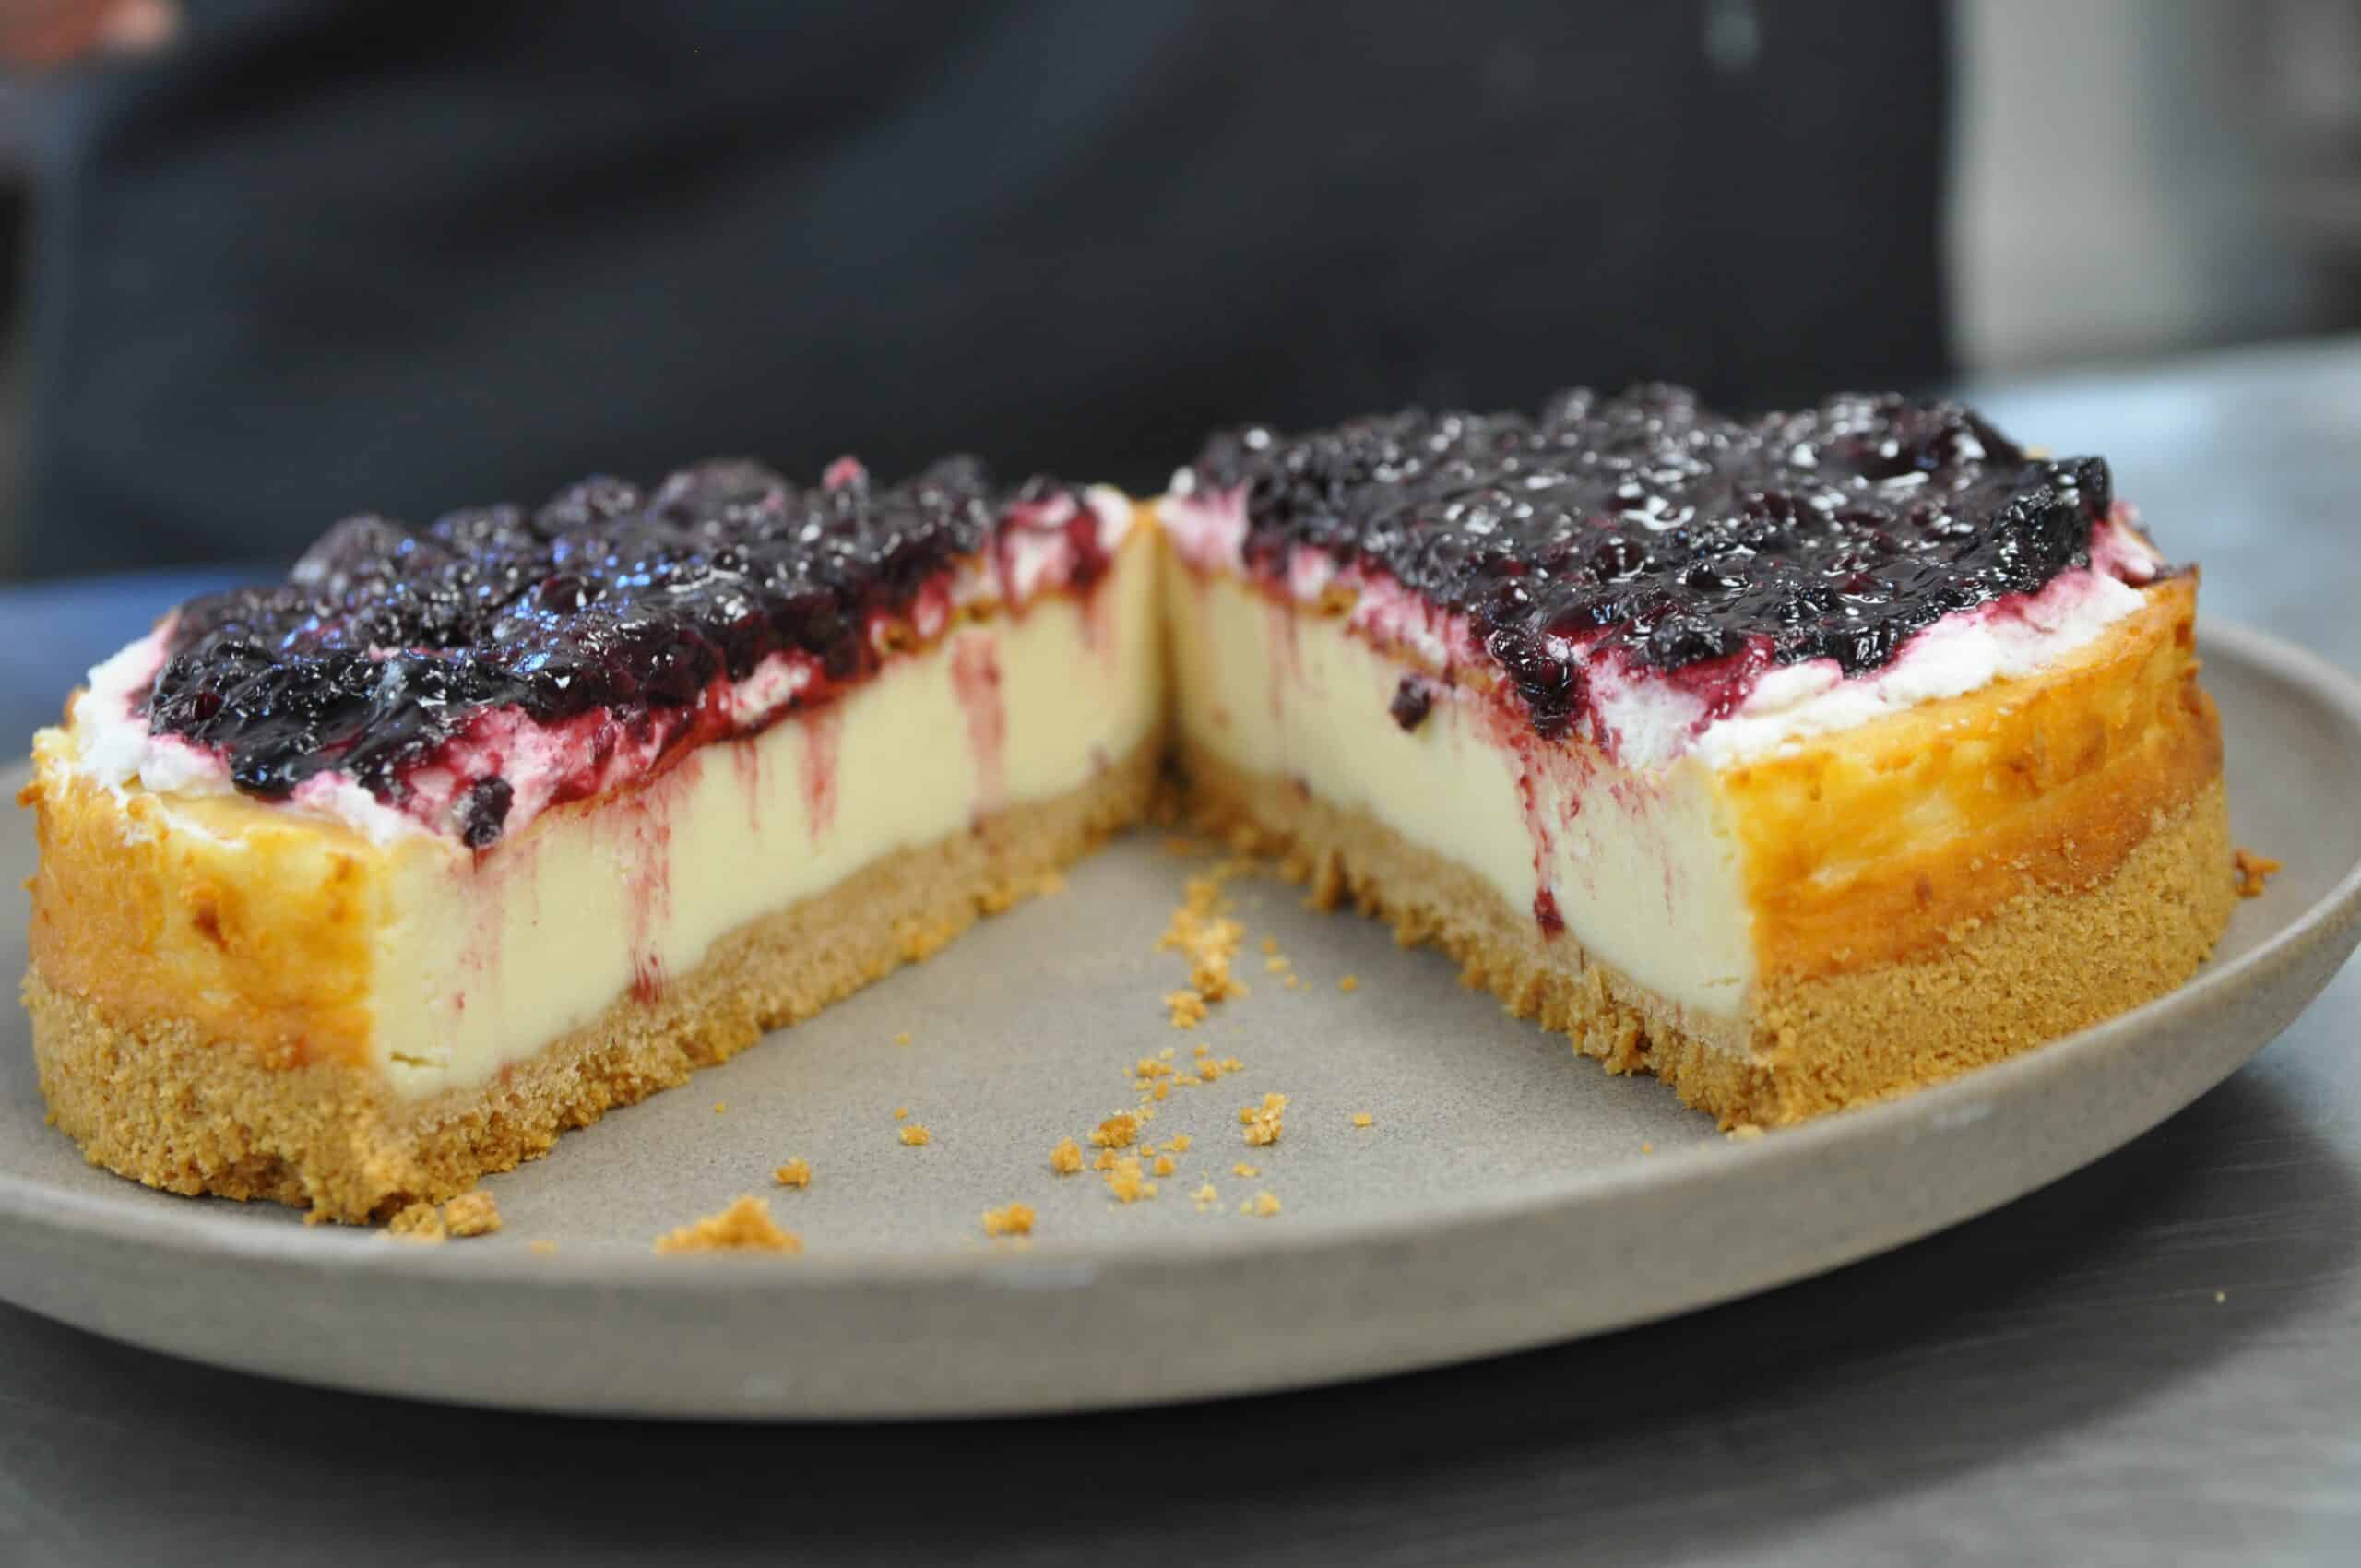 עוגת גבינה סטייל ניו יורק בעשר דקות הכנה – טעם גן עדן